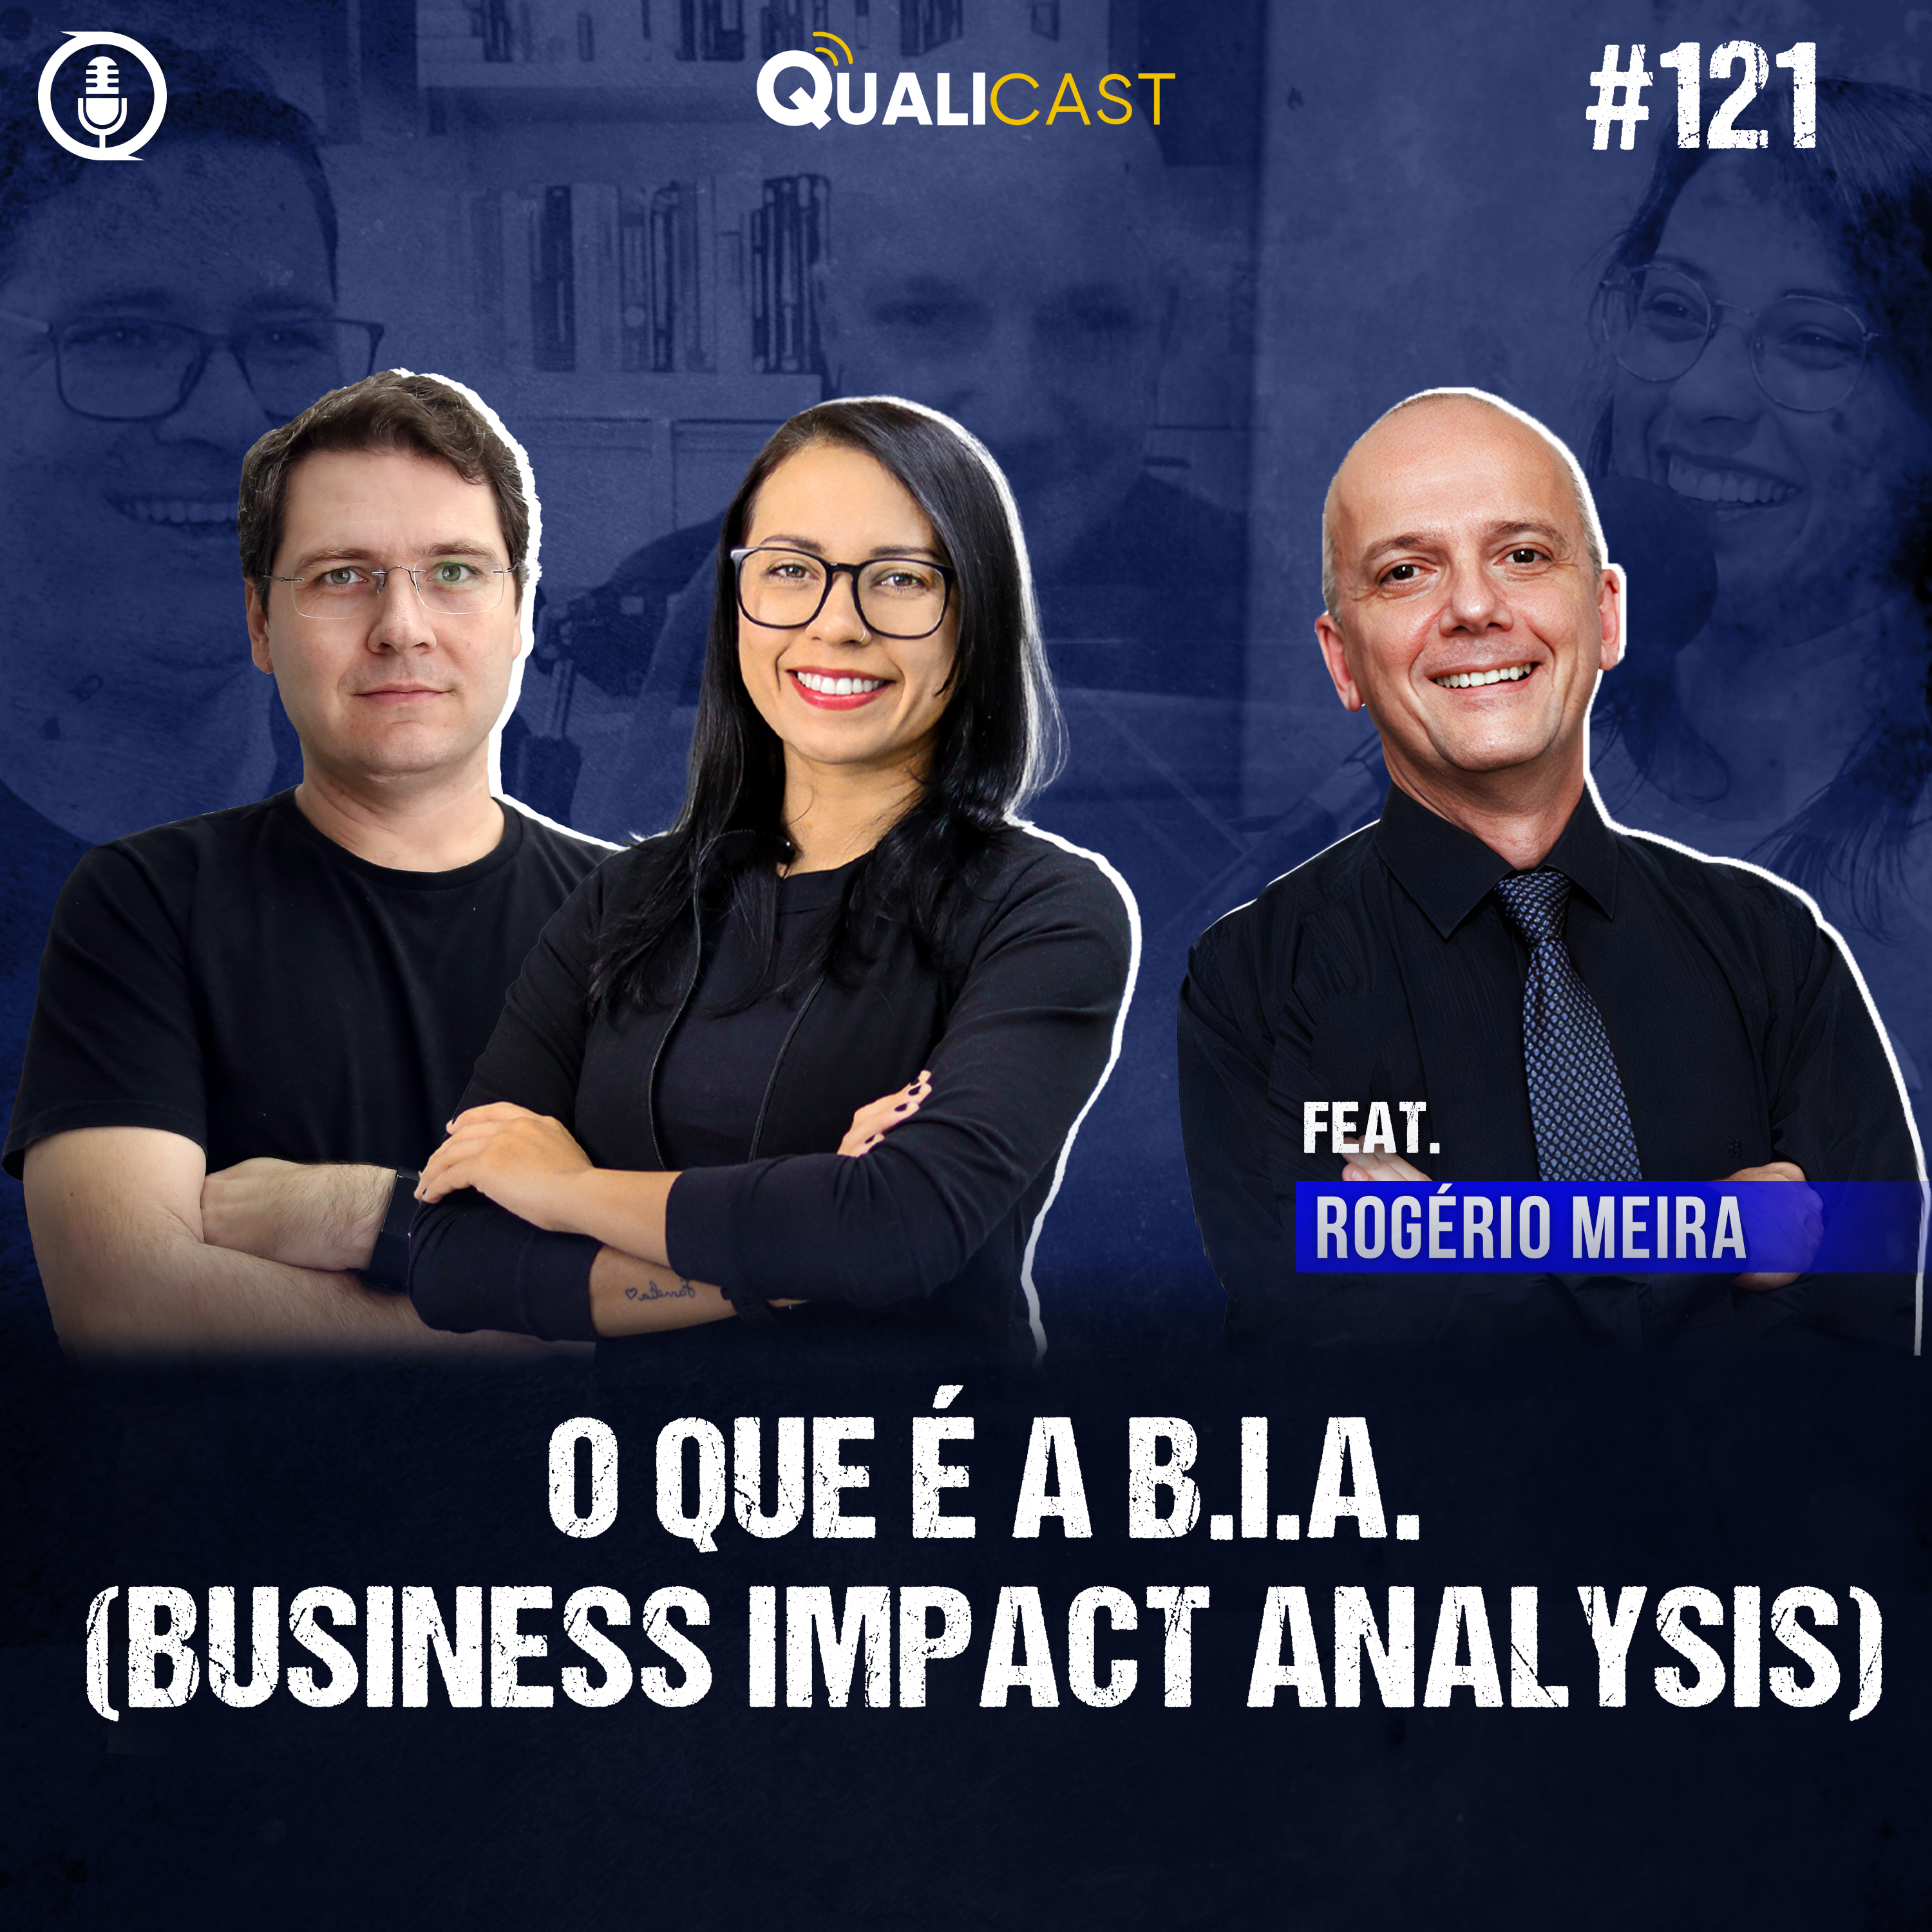 #121 - Qualicast - O que é B.I.A. (Business Impact Analysis) com Rogério Meira